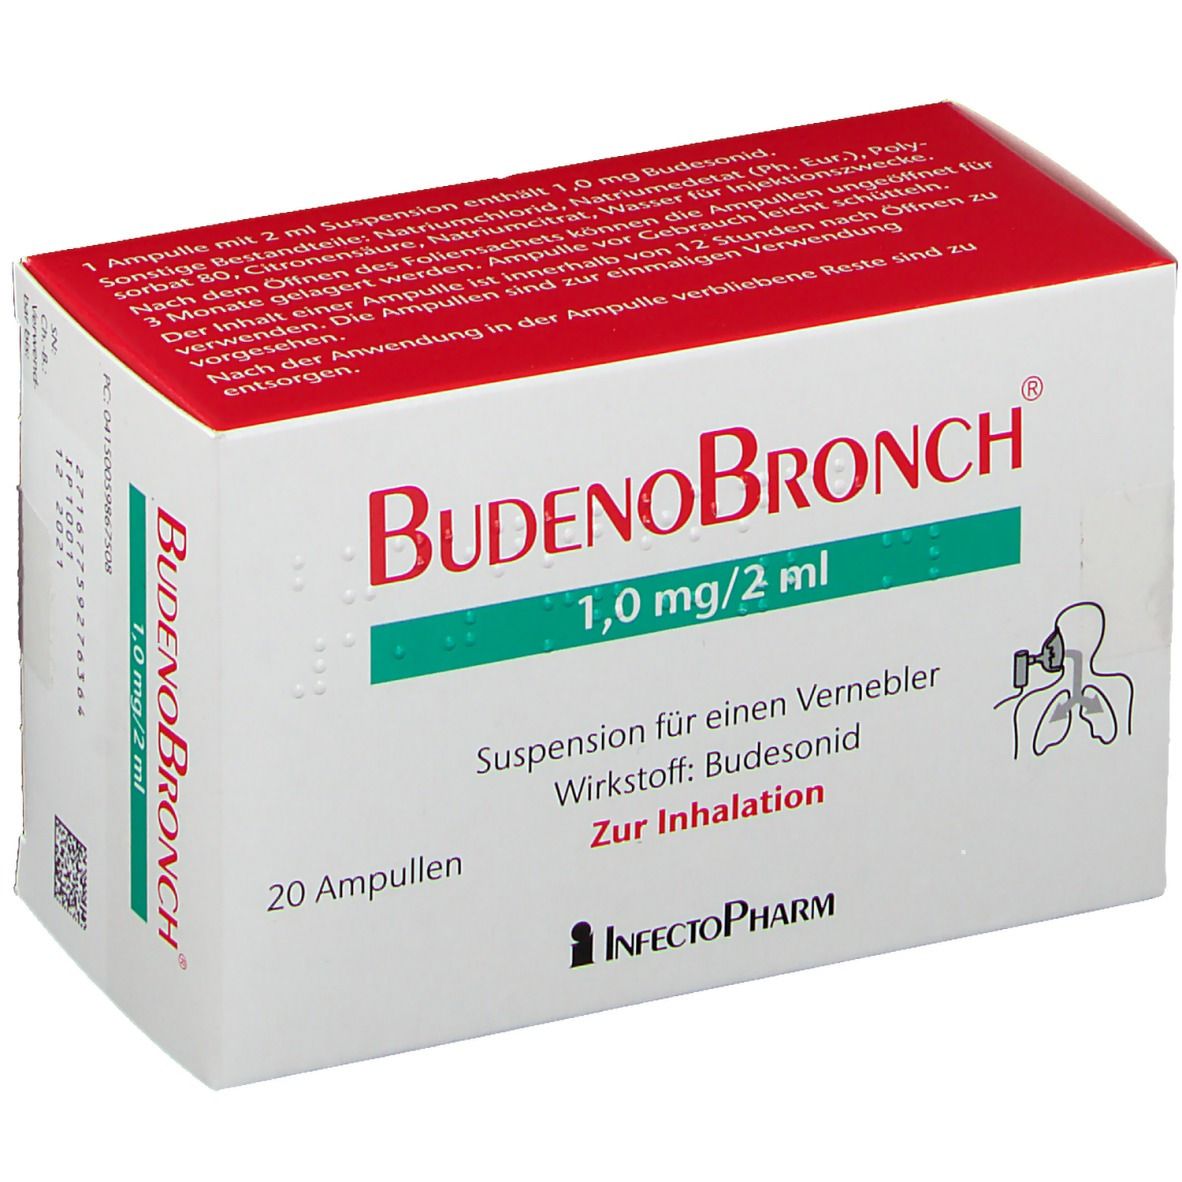 Budenobronch® 1,0 mg/2 ml